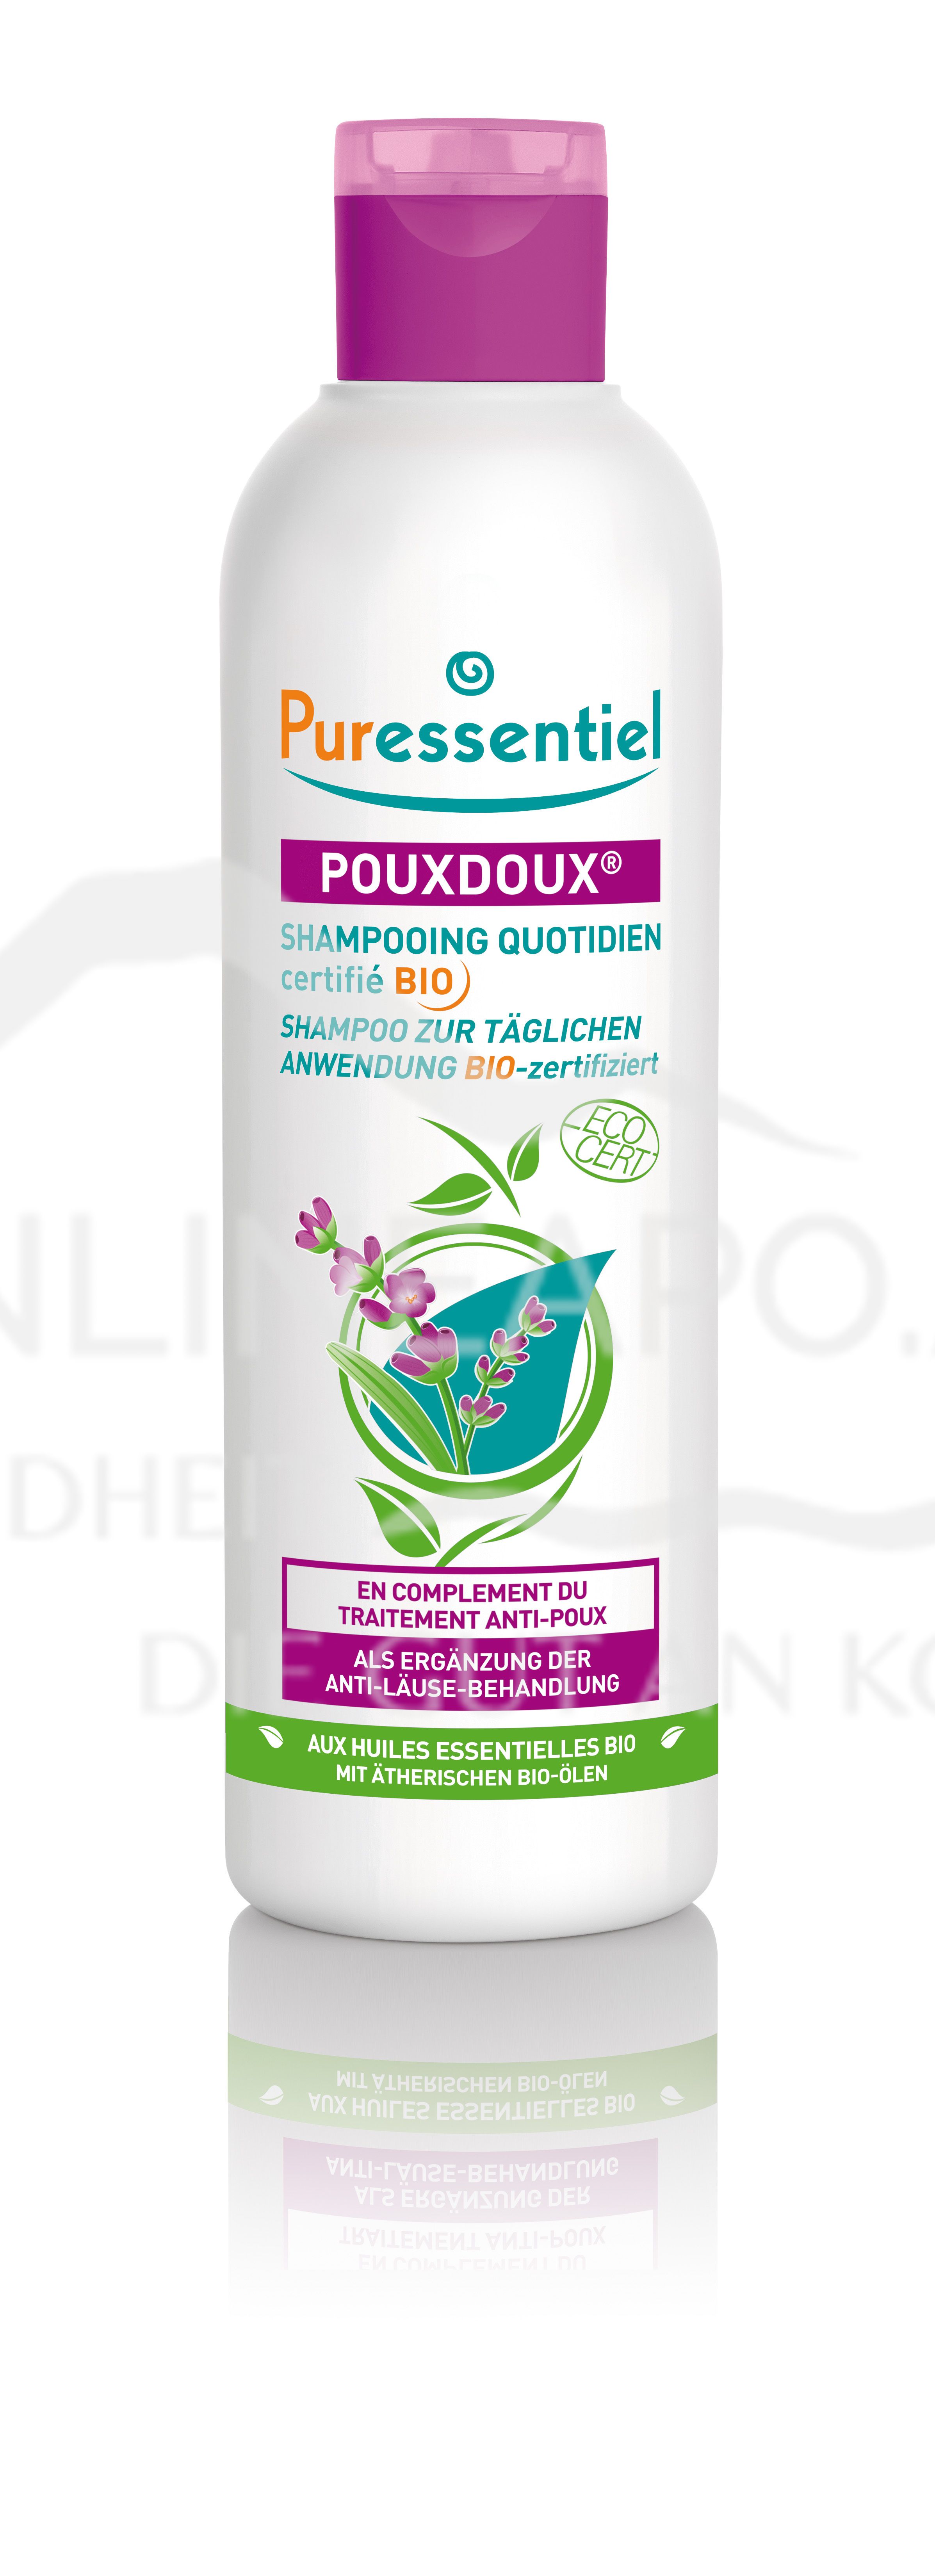 Puressentiel Pouxdoux® Shampoo